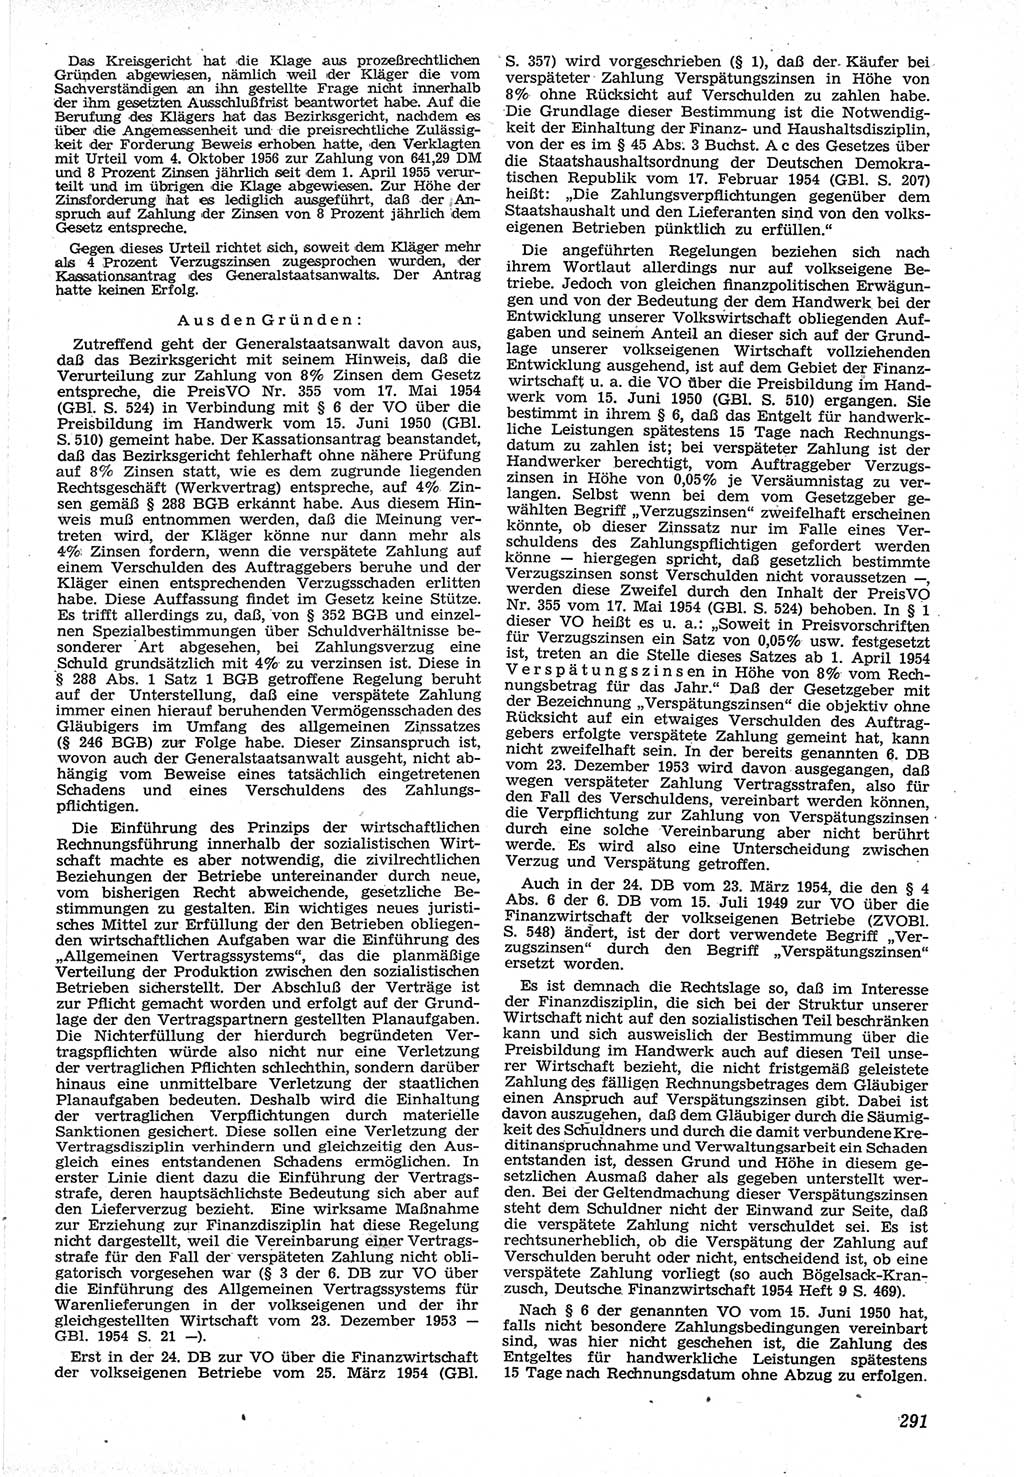 Neue Justiz (NJ), Zeitschrift für Recht und Rechtswissenschaft [Deutsche Demokratische Republik (DDR)], 12. Jahrgang 1958, Seite 291 (NJ DDR 1958, S. 291)